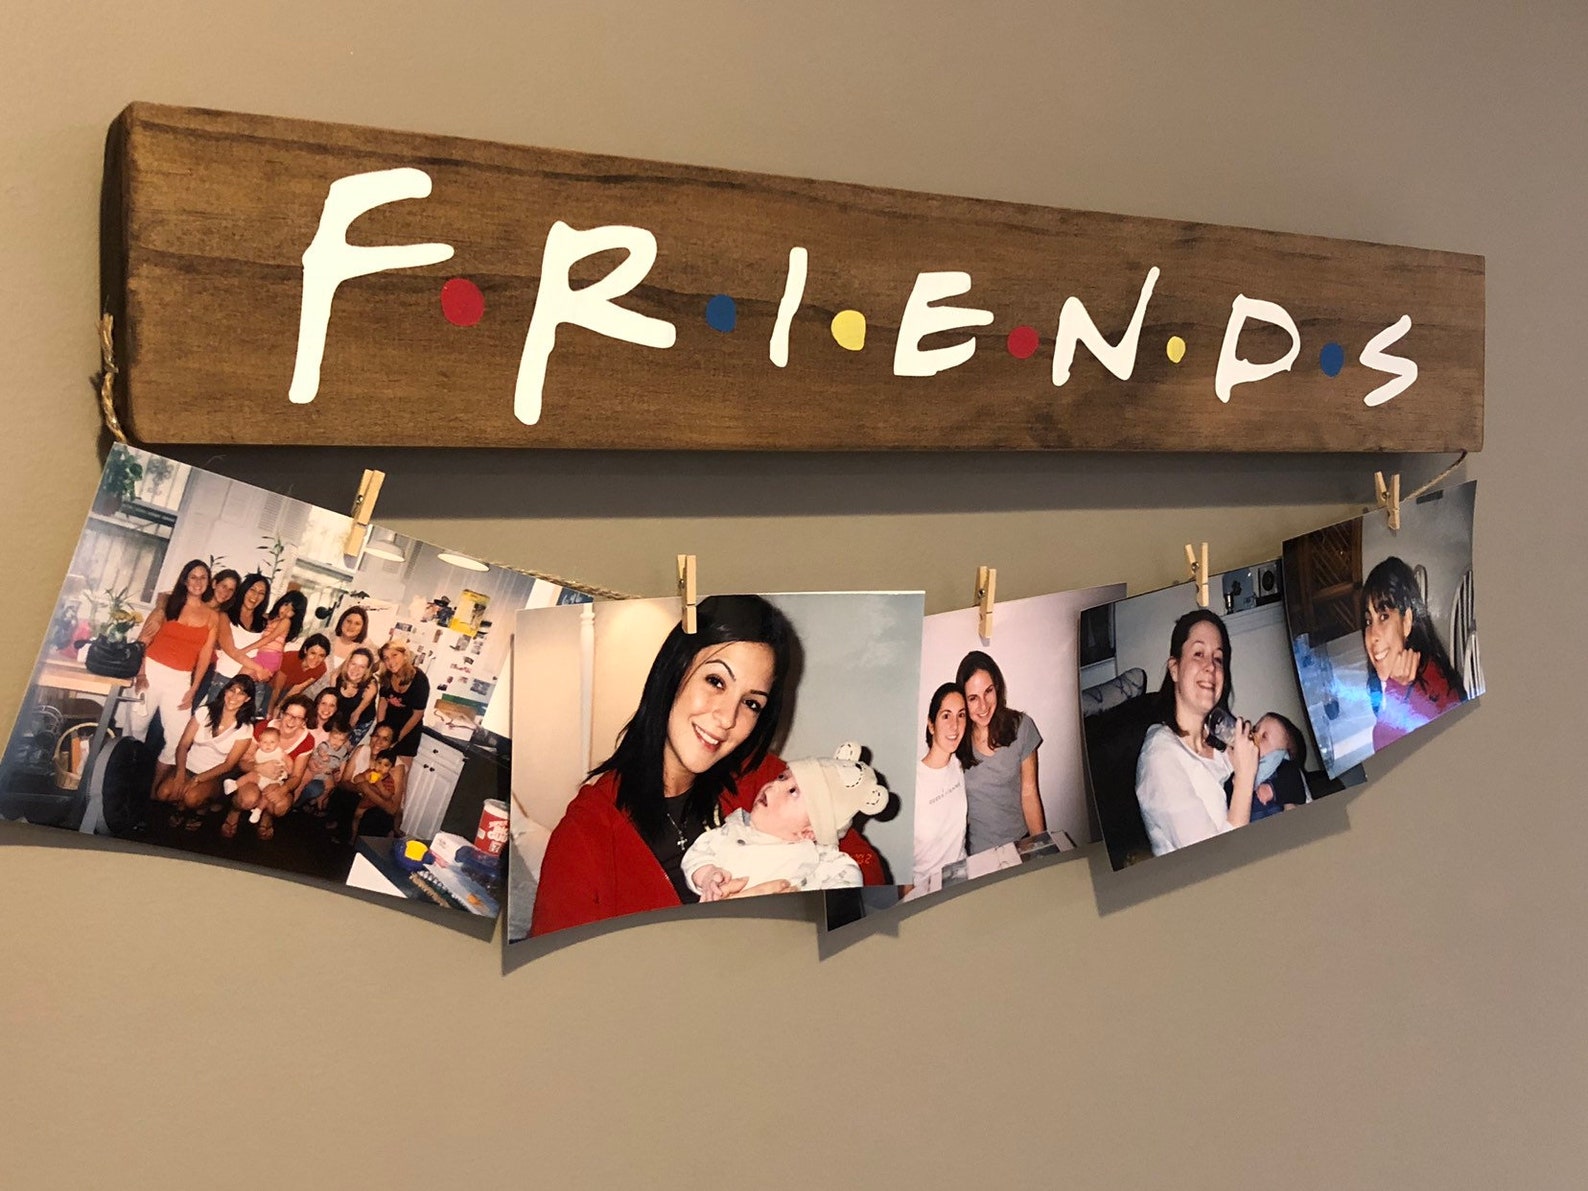 Friends tv show gifts, fandom gifts, fandom gift ideas, friends tv gift  ideas